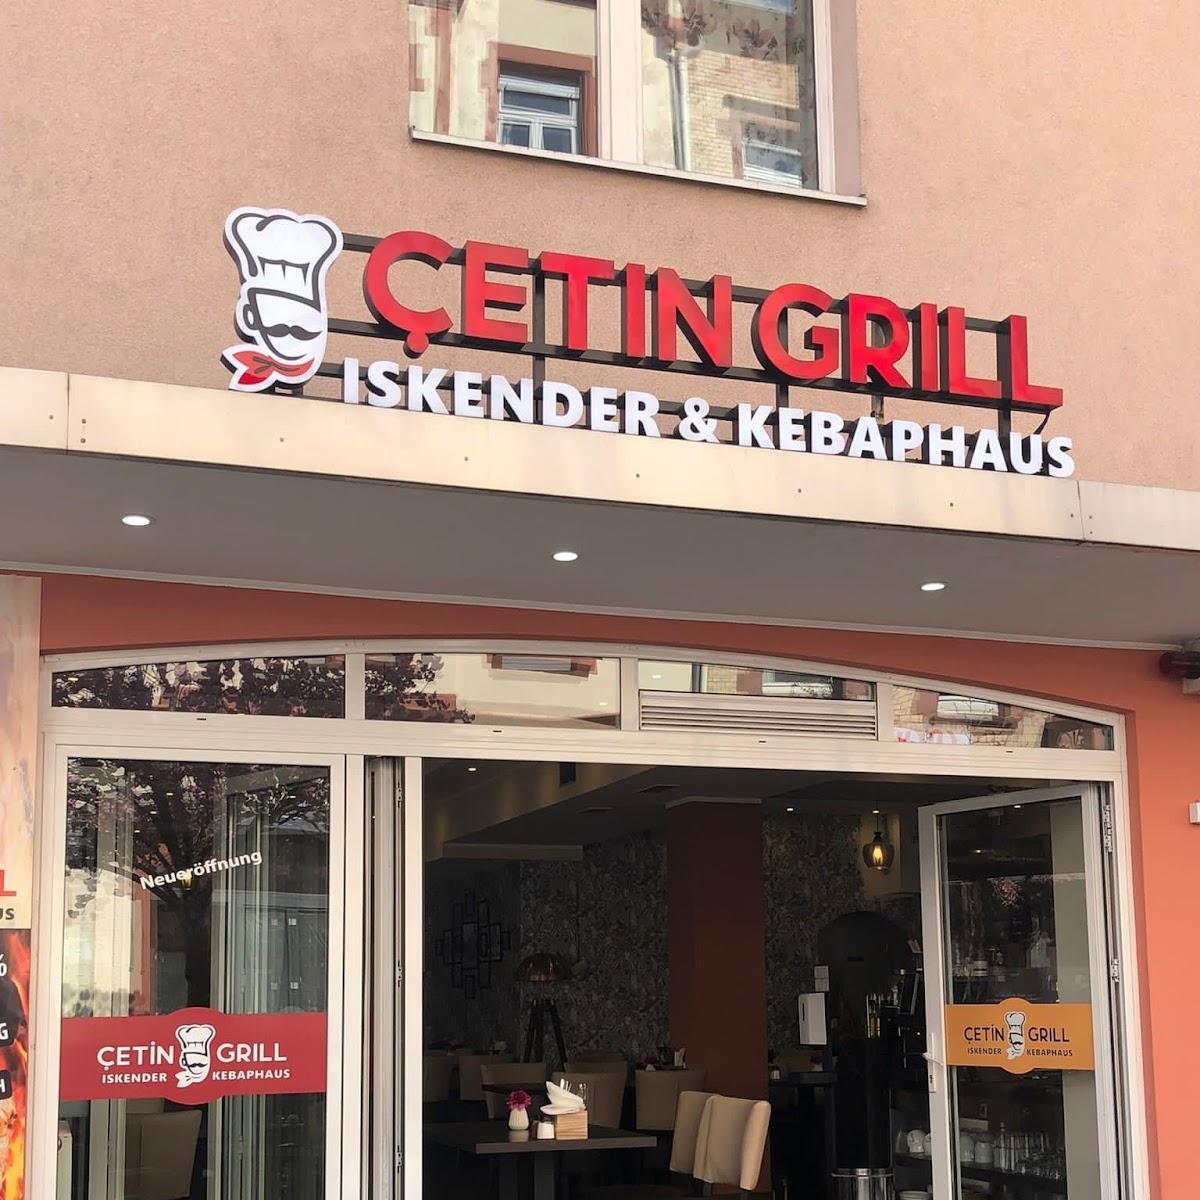 Restaurant "CETIN GRILL - Iskender & Kebaphaus BOCKENHEIM" in Frankfurt am Main